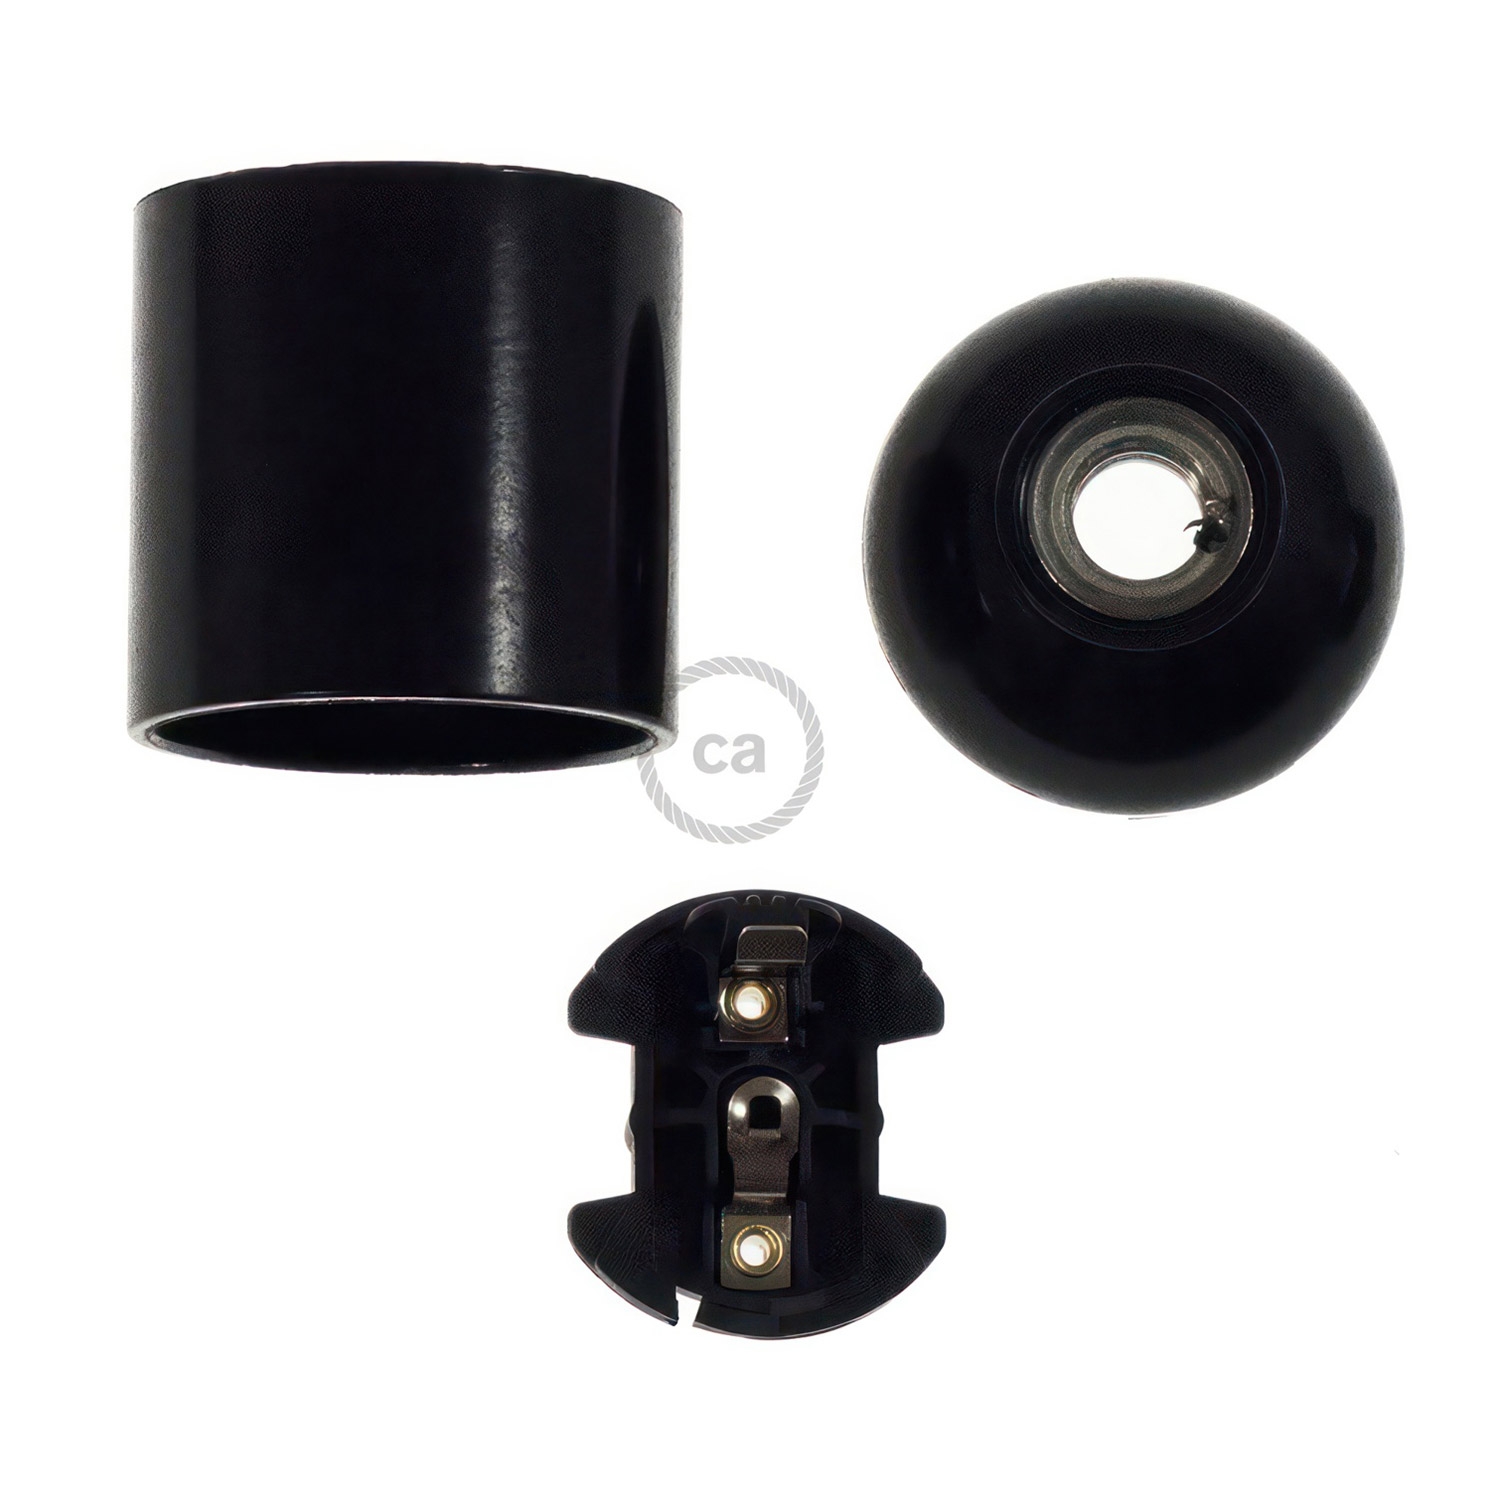 Bakelite E27 lamp holder kit